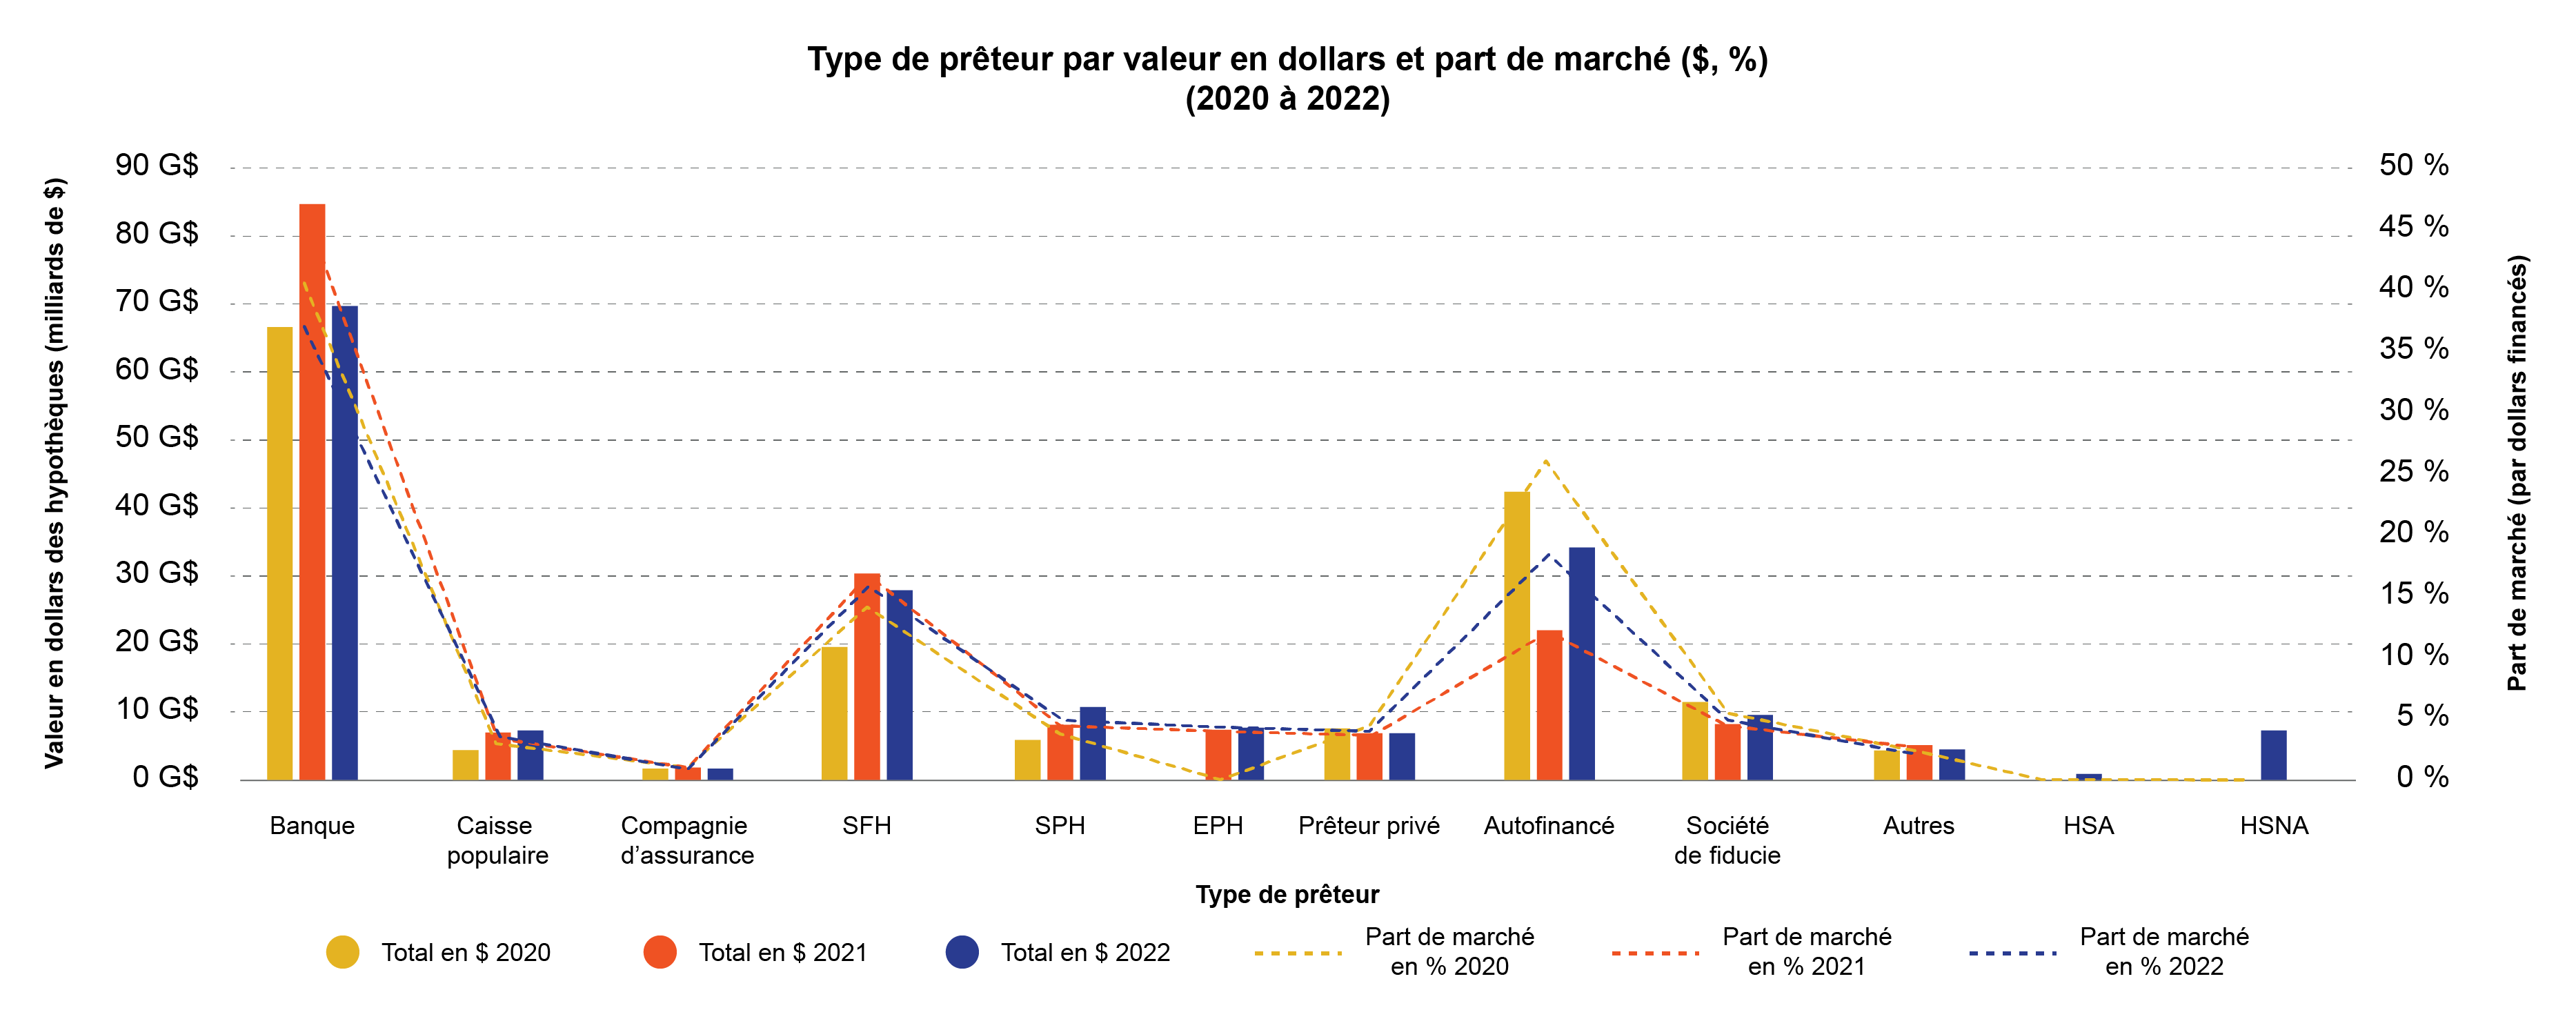 Type de prêteur par valeur en dollars et part de marché (2020 à 2022)